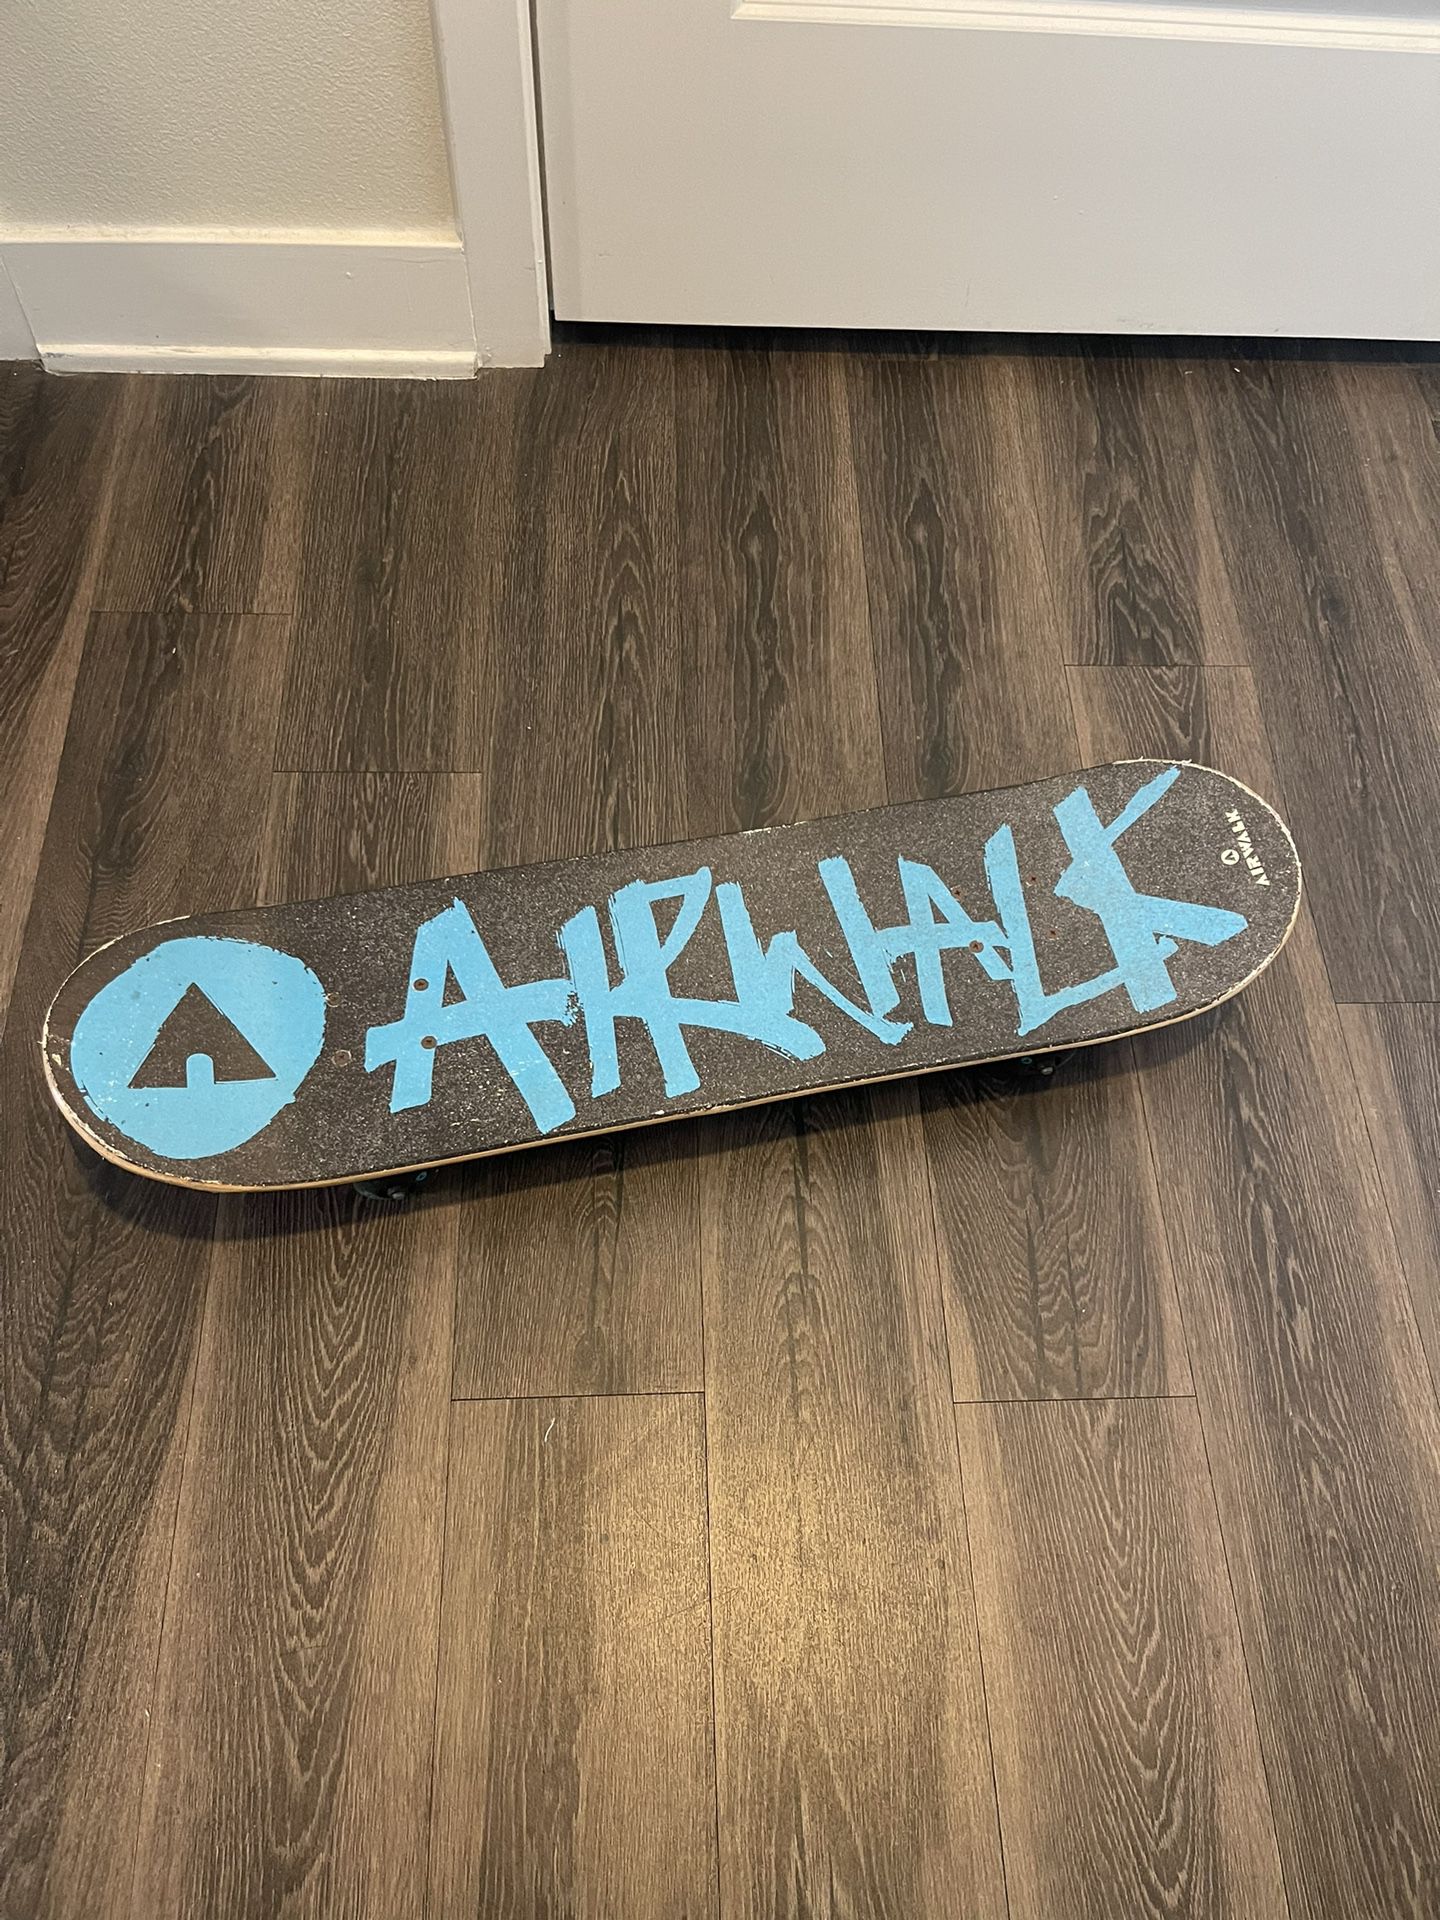 Airway Skateboard 